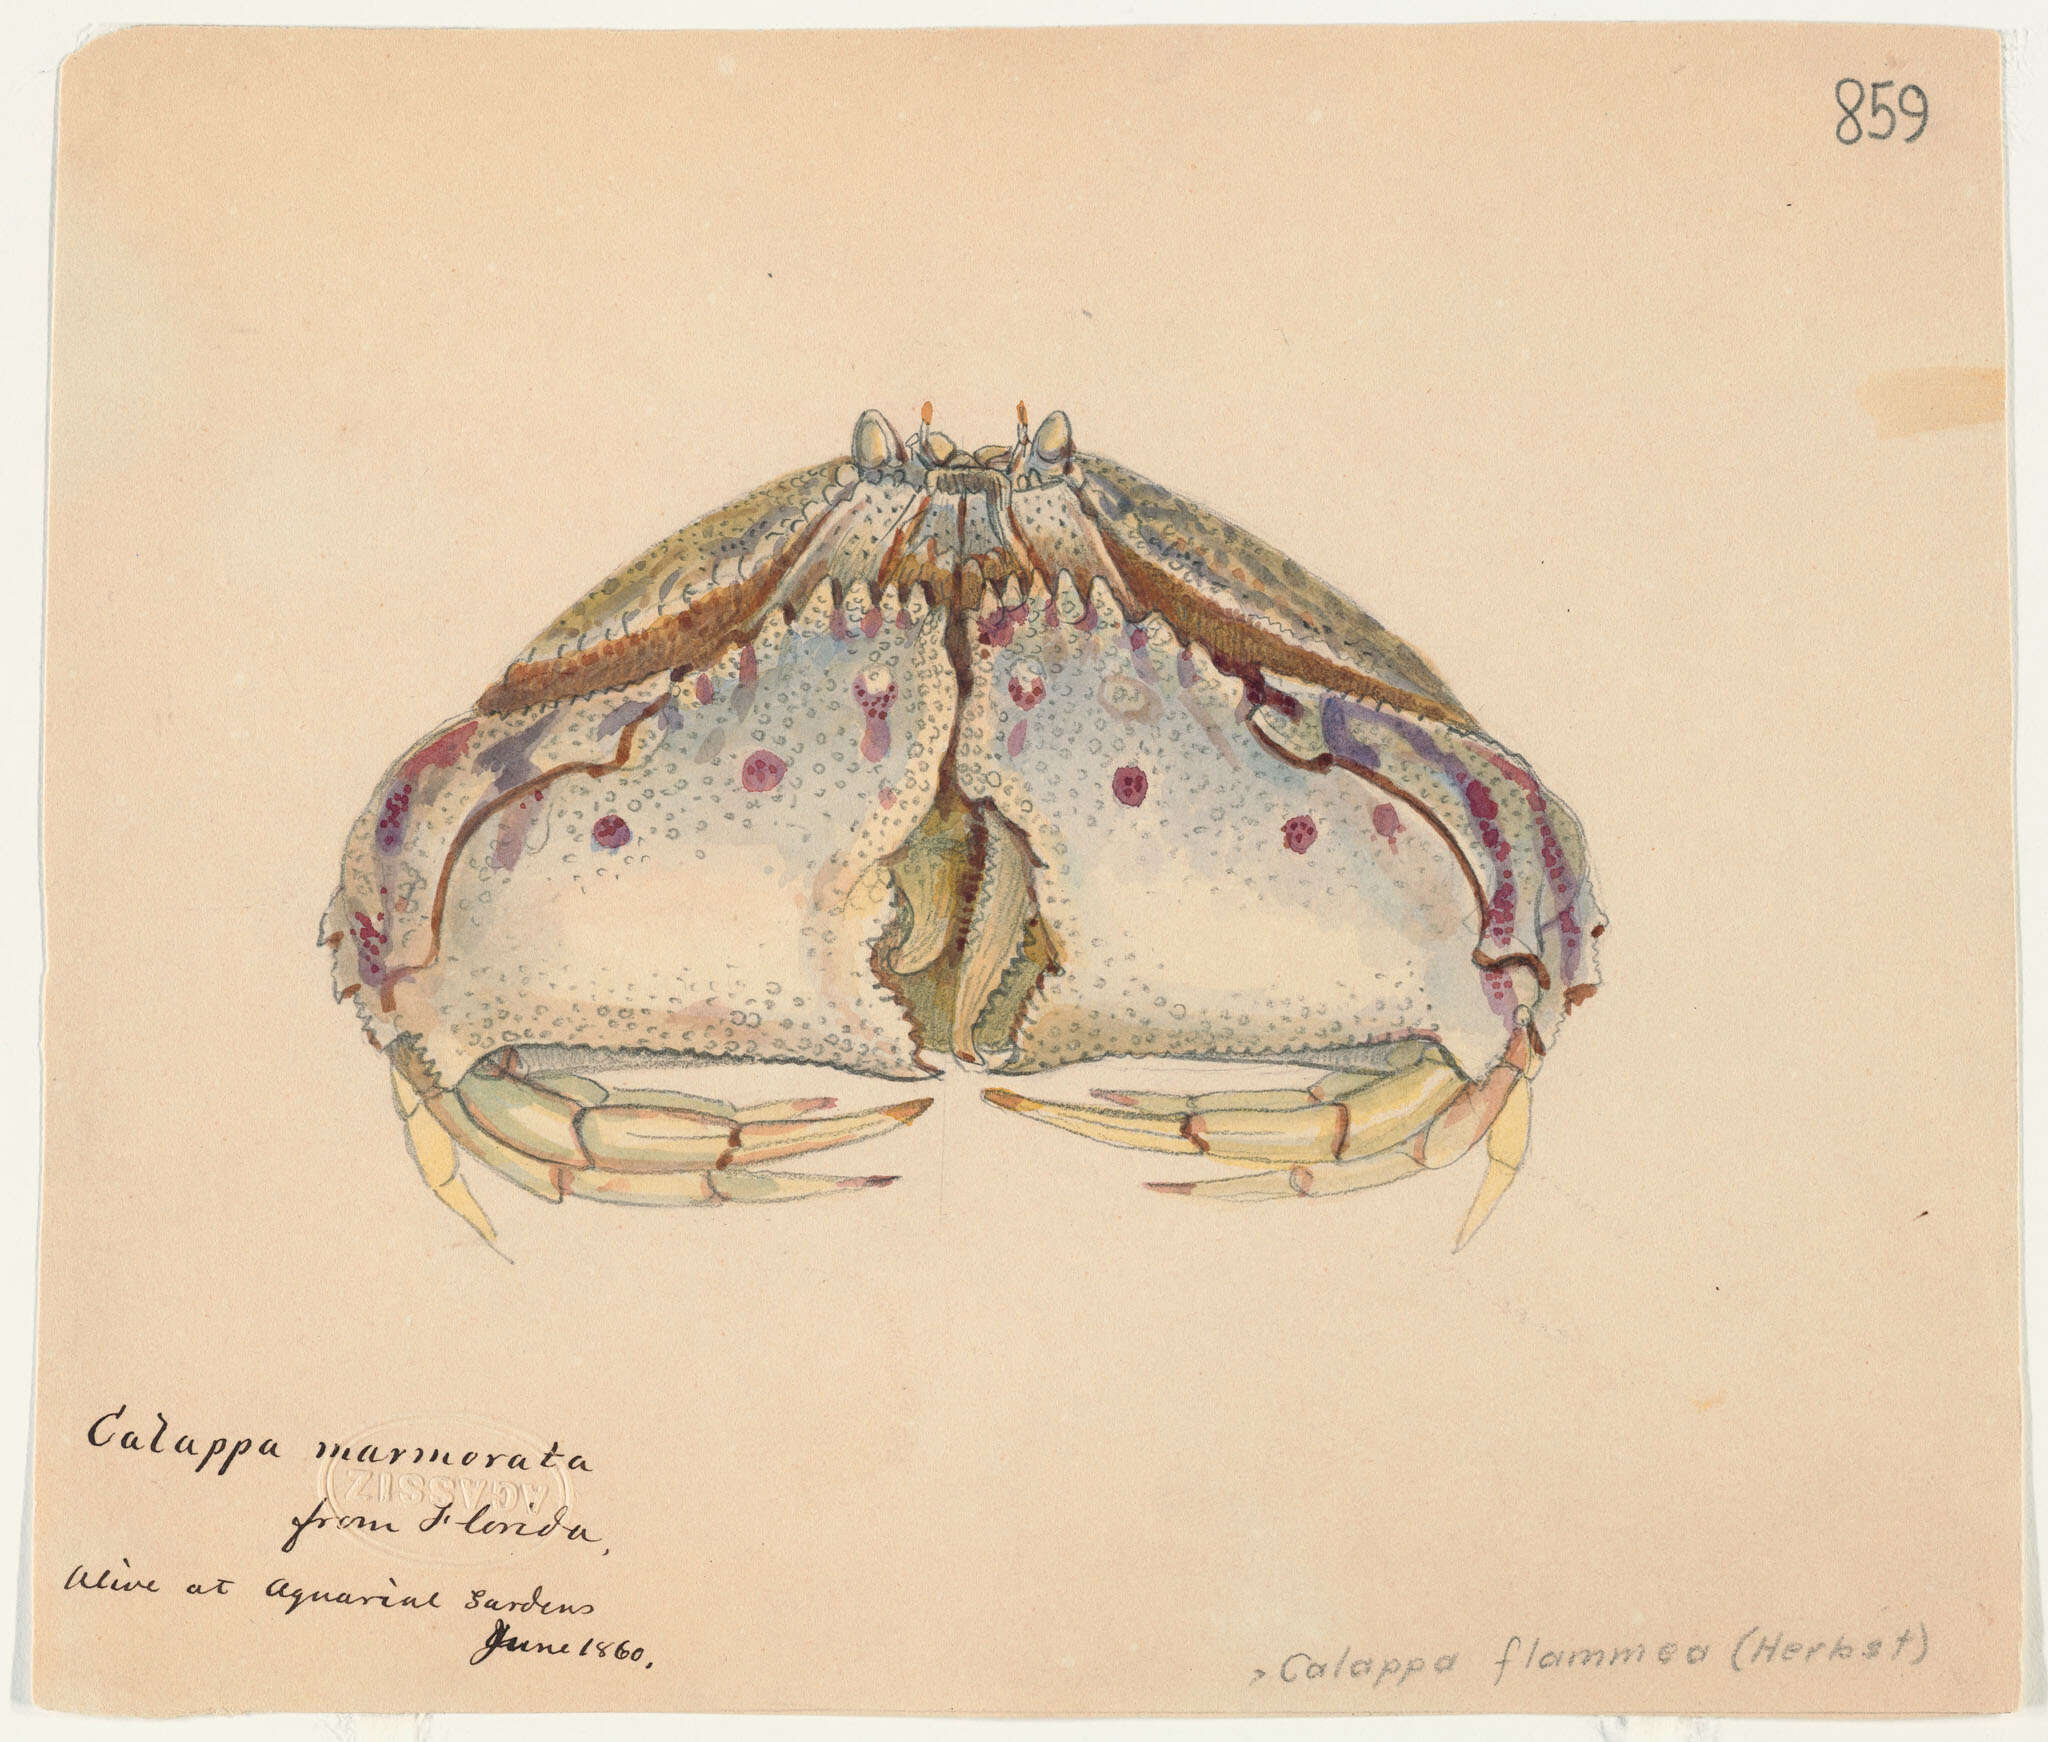 Image of Calappoidea De Haan 1833